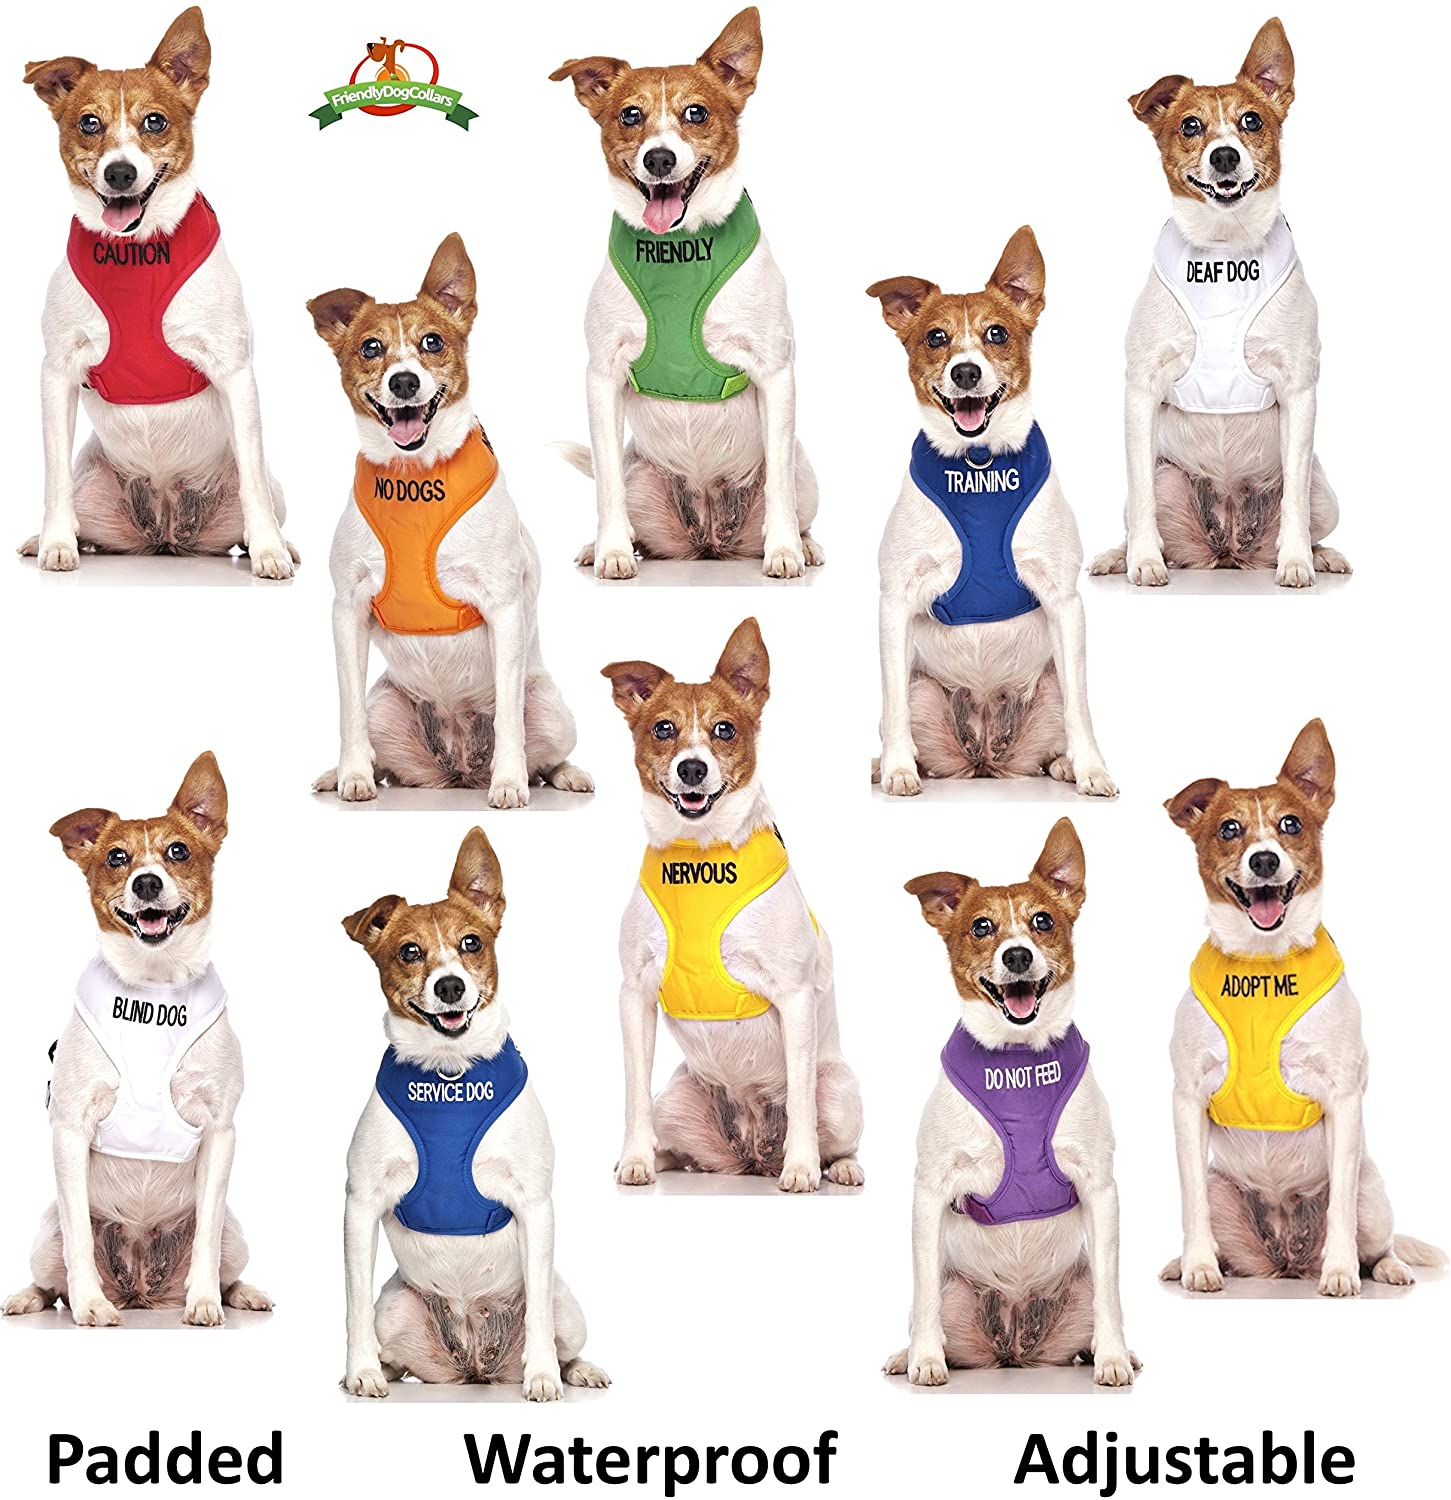  Chaleco de apoyo para perro con código de color, con anilla en D acolchada y resistente al agua para evitar accidentes al avisar a otros de tu perro por adelantado 